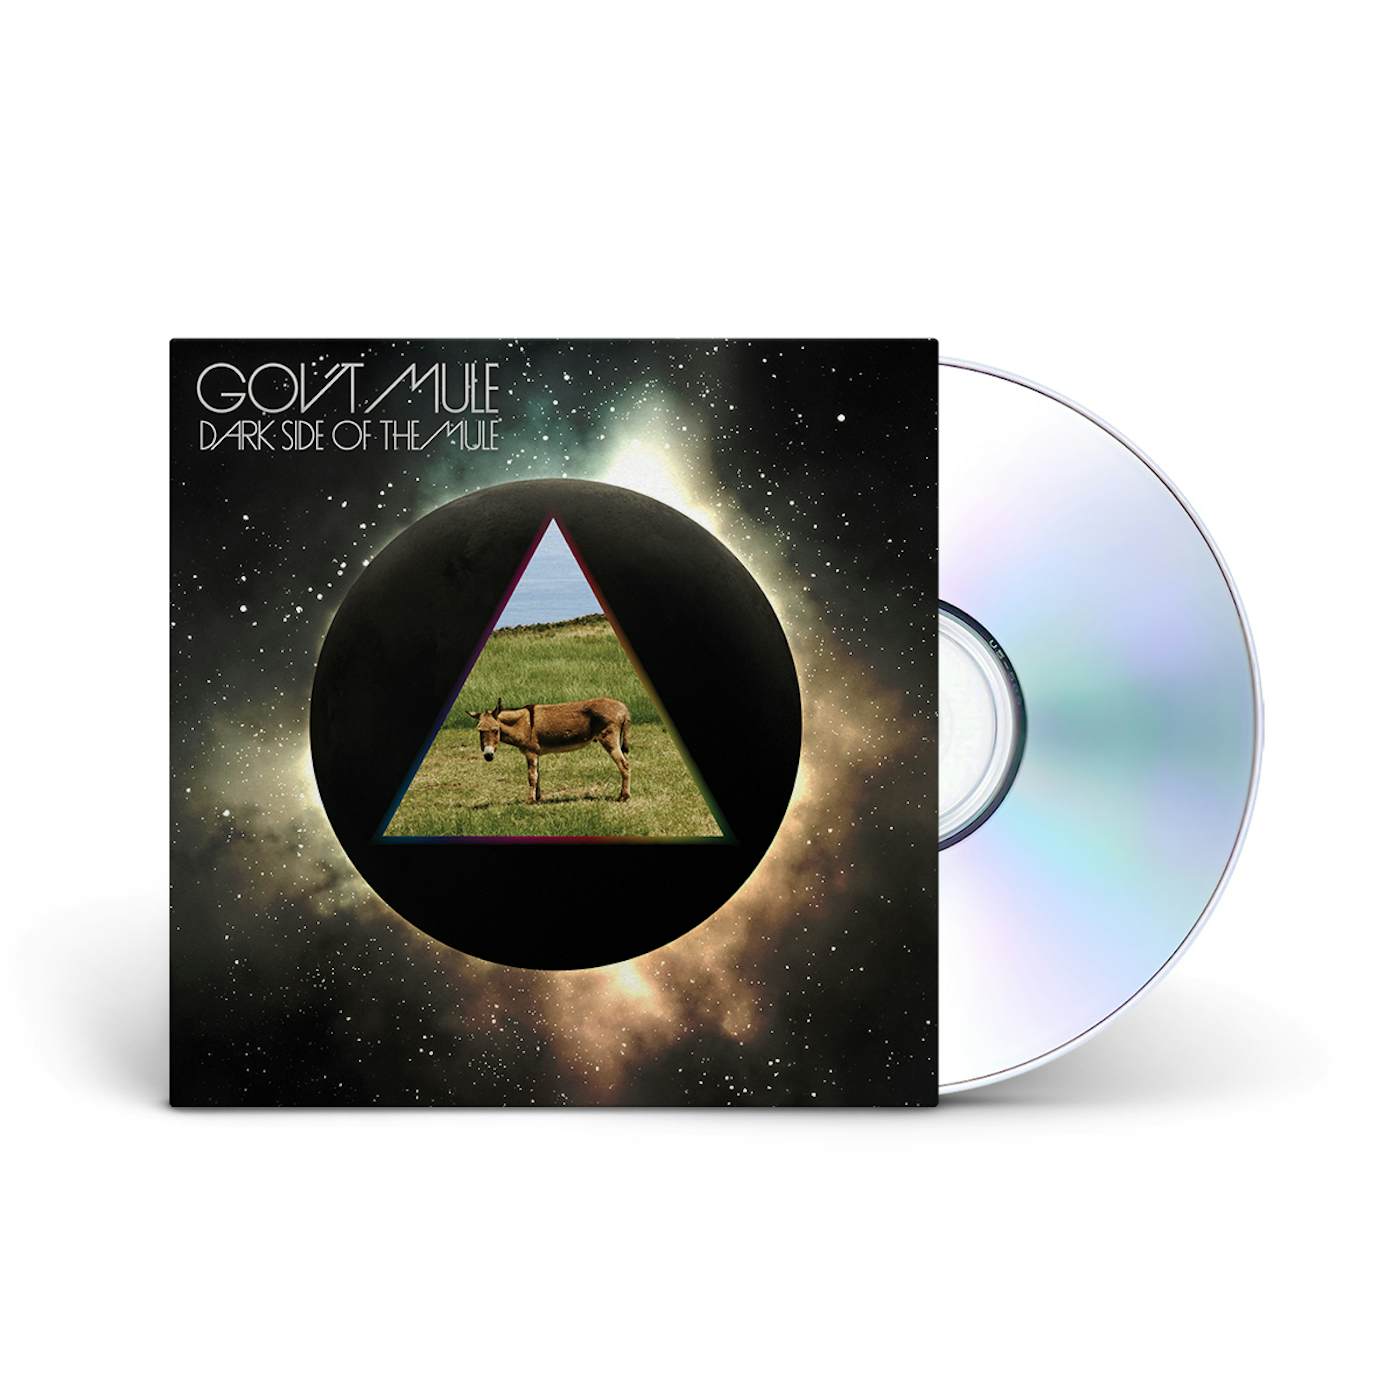 Gov't Mule Dark Side Of The Mule (Deluxe 3-CD Set, w/ Bonus DVD)